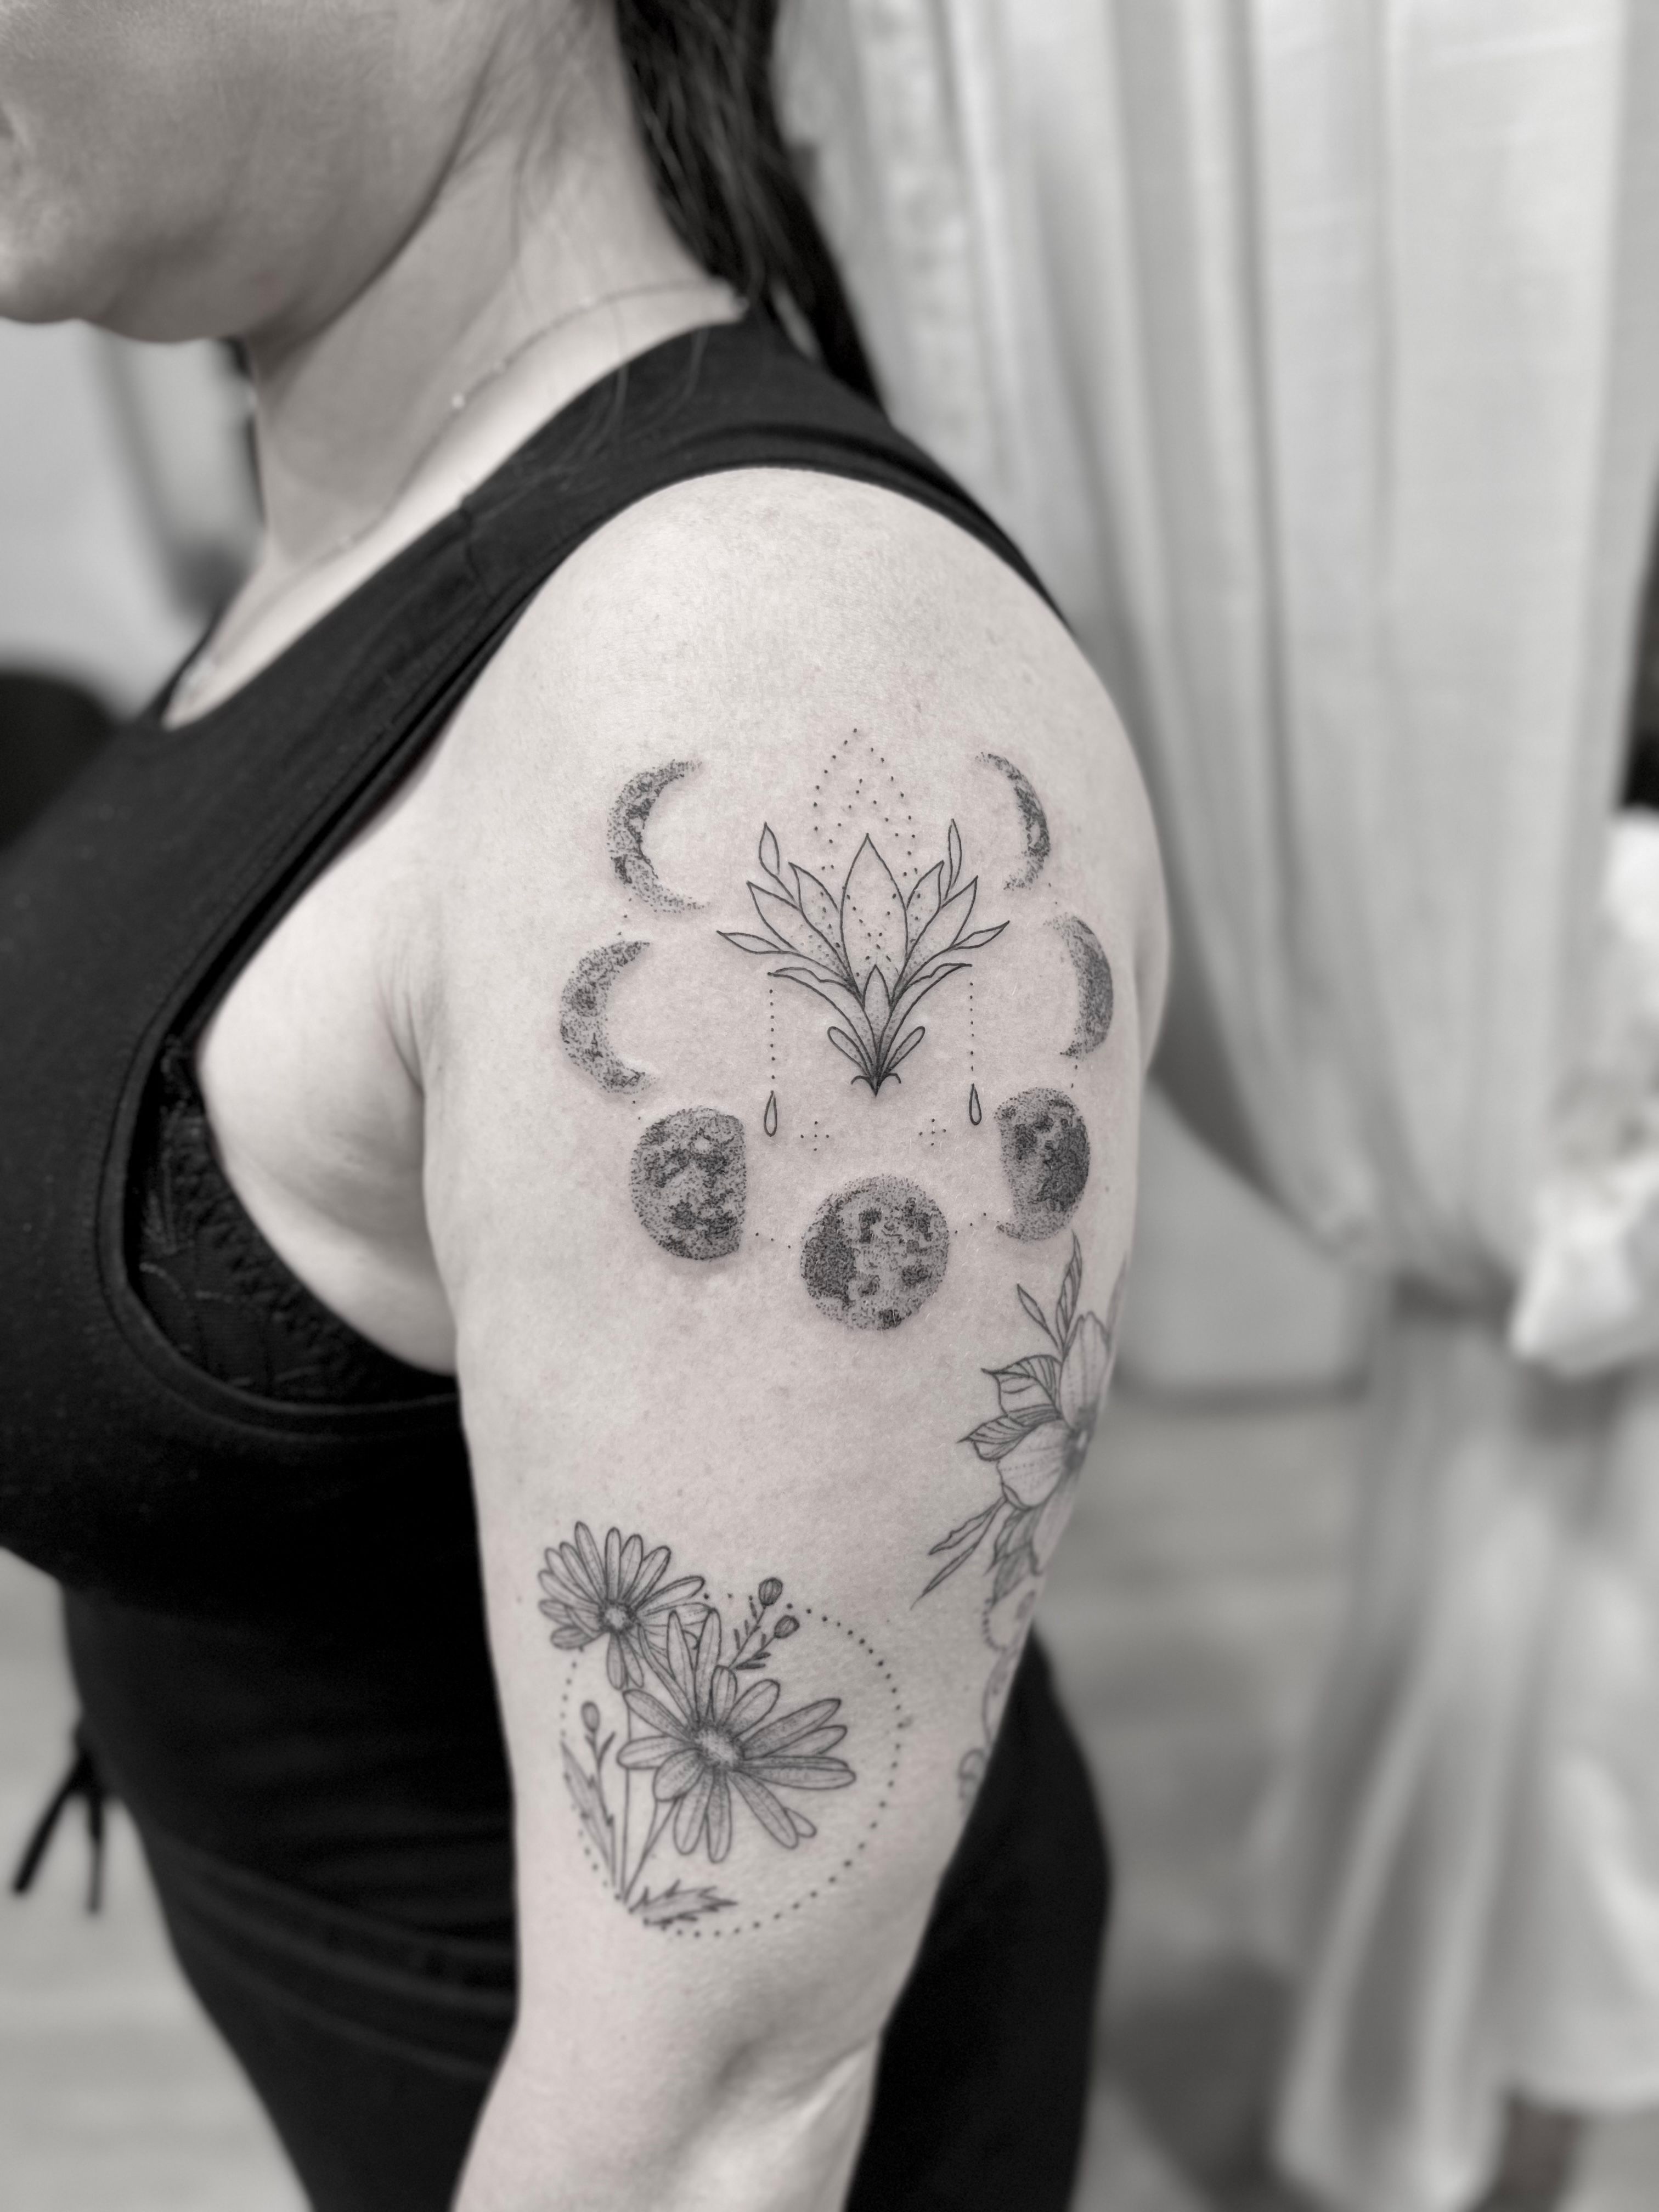 Dotwork Ornamental Tattoo done by @ladybao.tattoo at Blaec, London UK : r/ tattoo